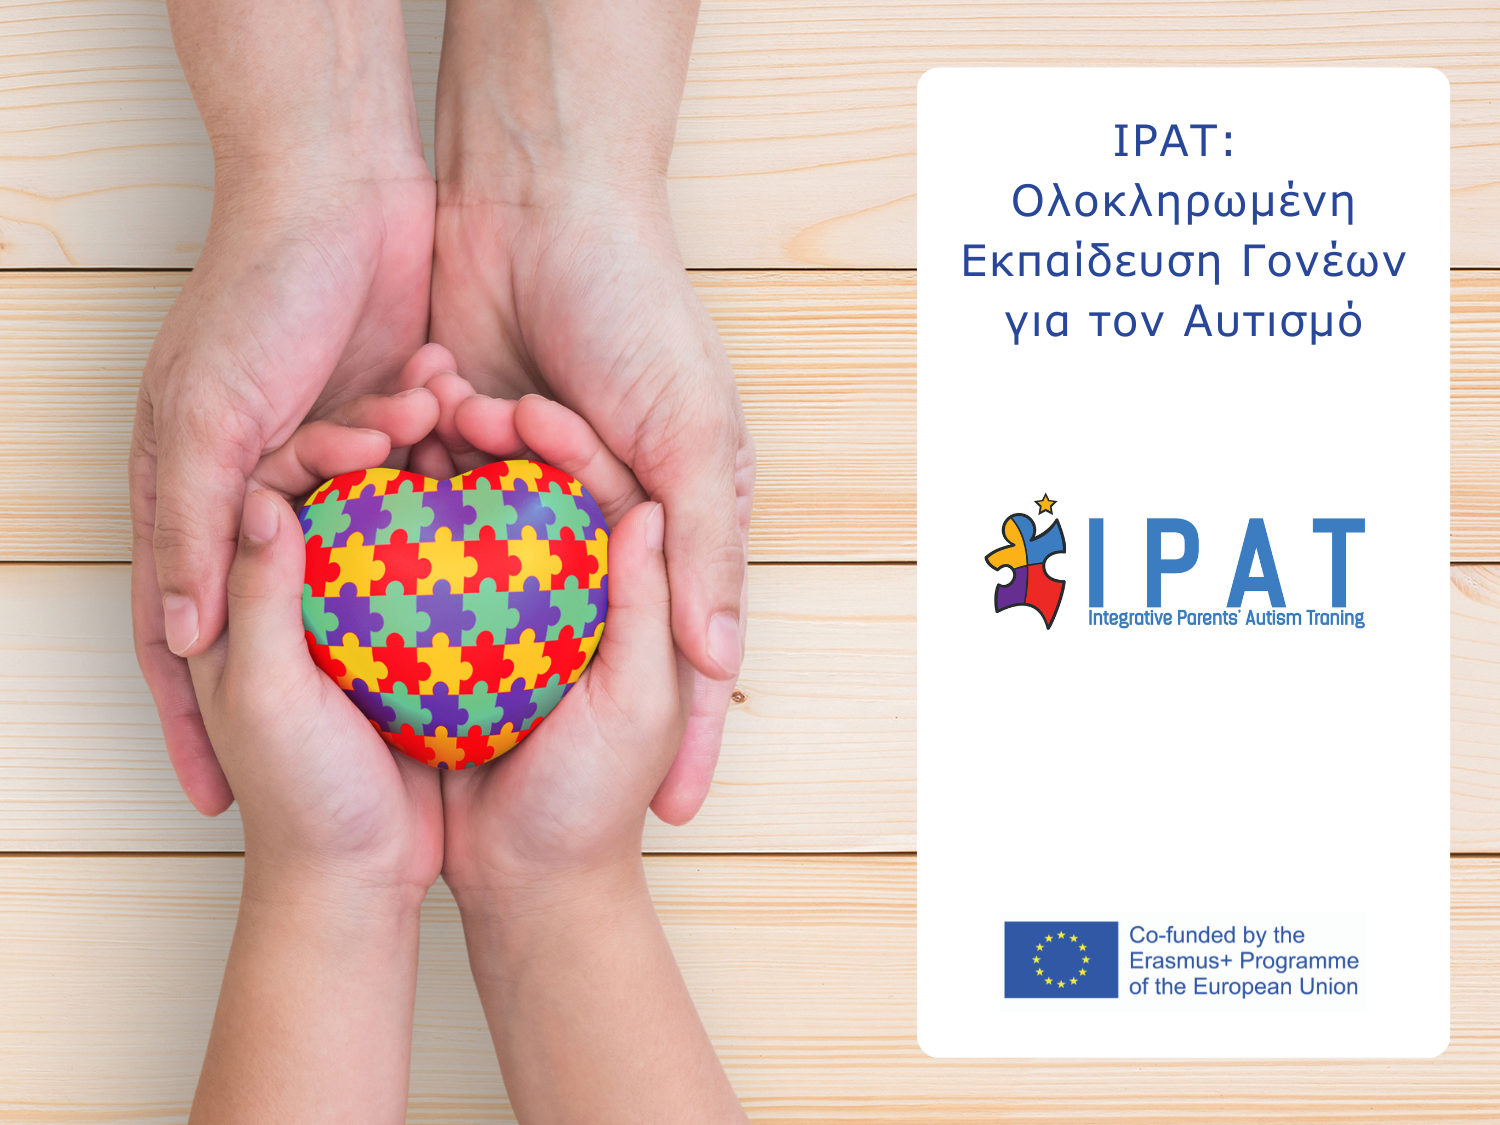 IPAT: Ολοκληρωμένη Εκπαίδευση Γονέων για τον Αυτισμό